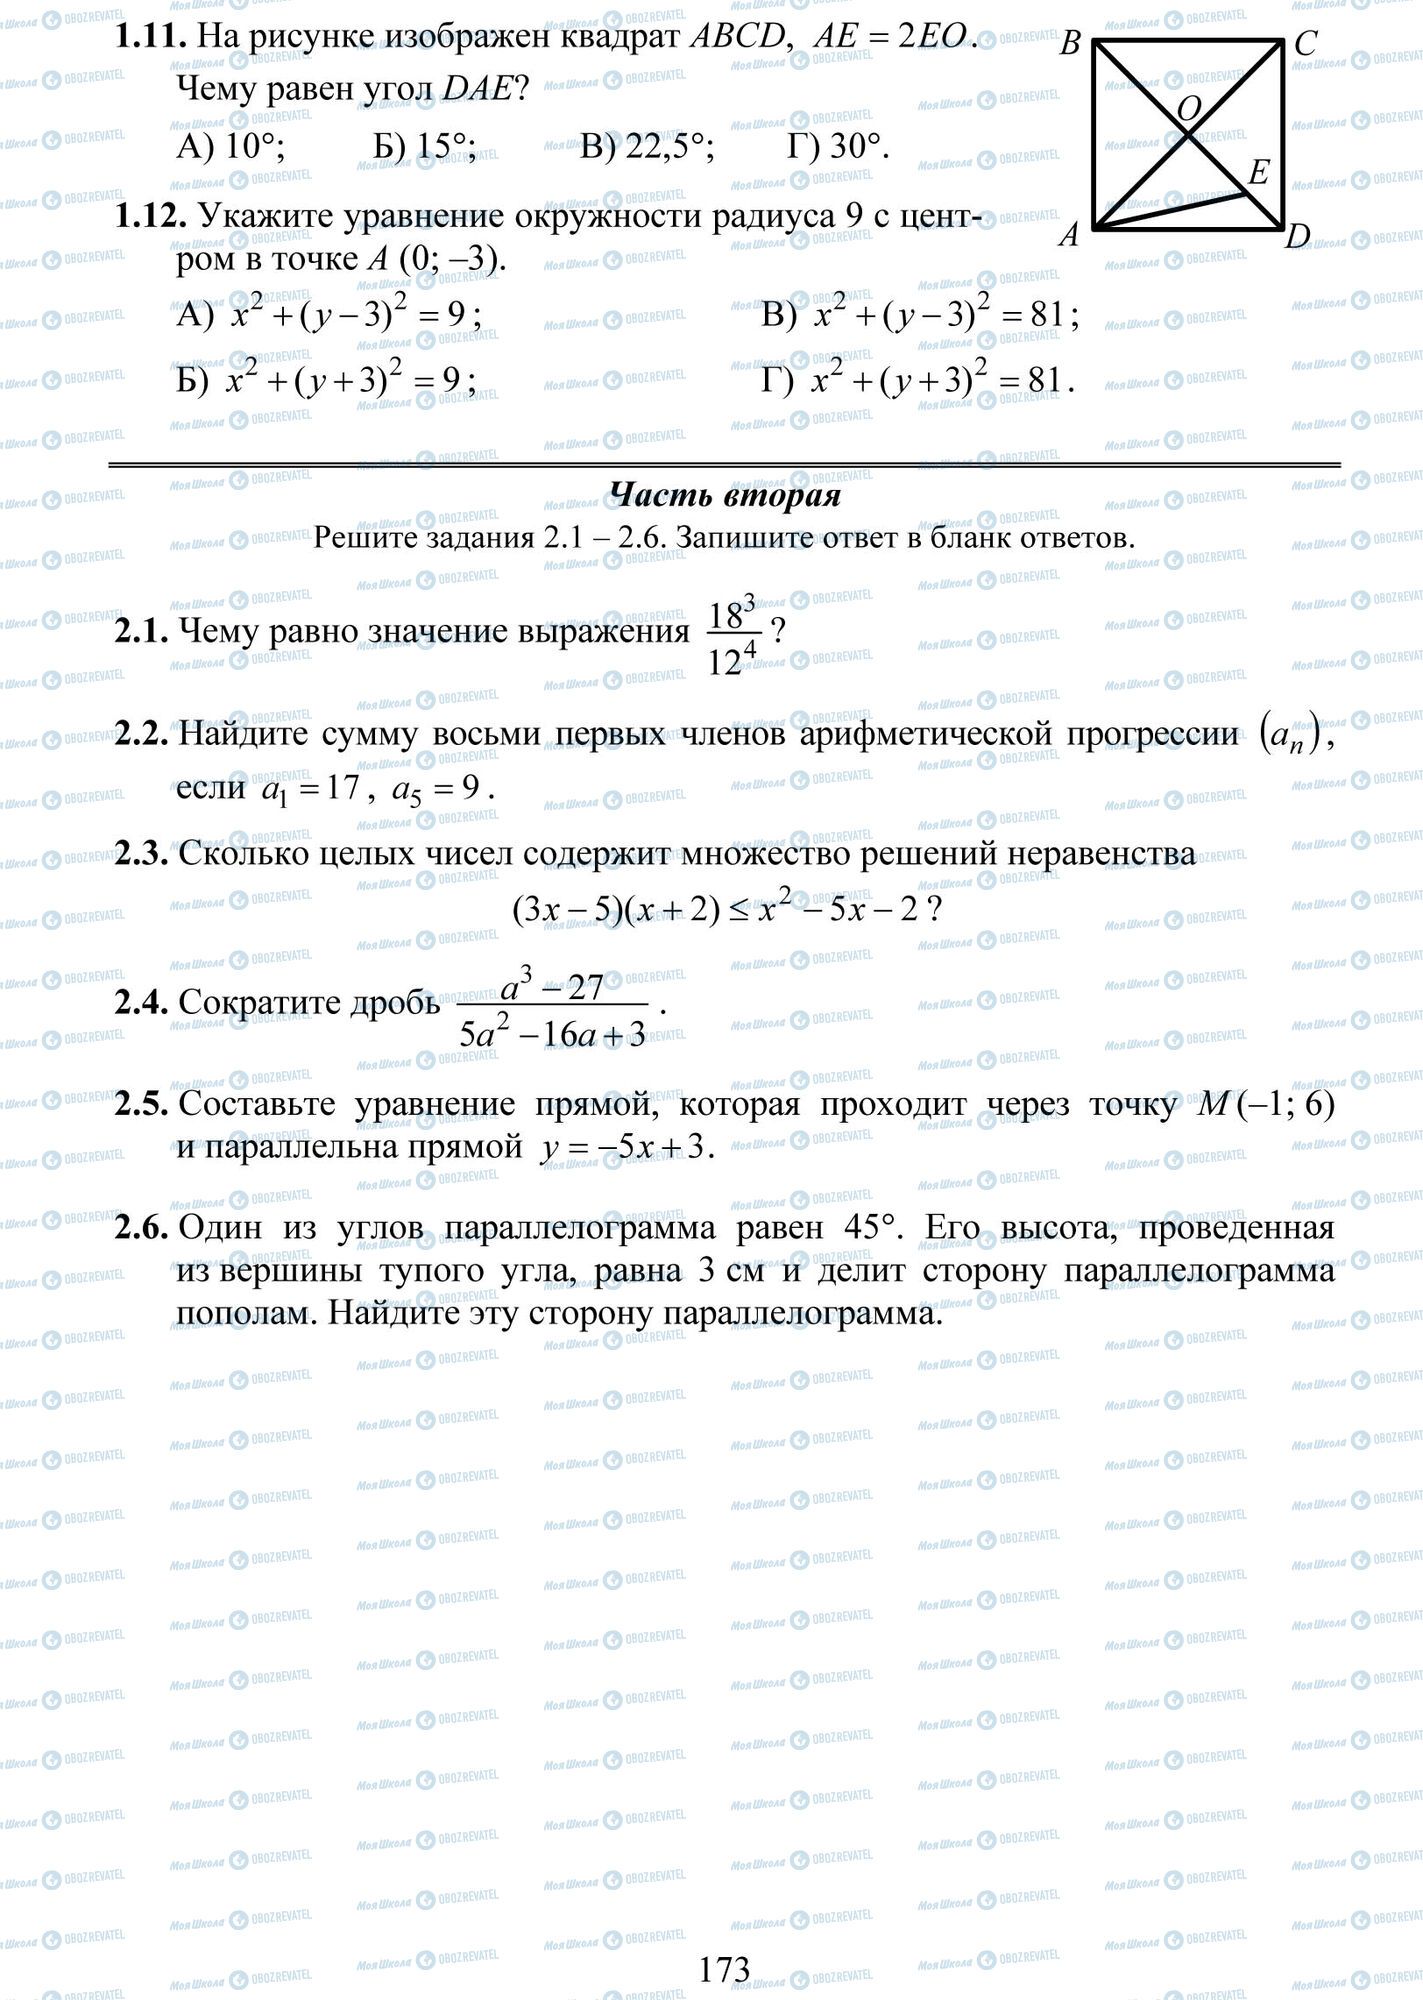 ДПА Математика 9 класс страница 11-12